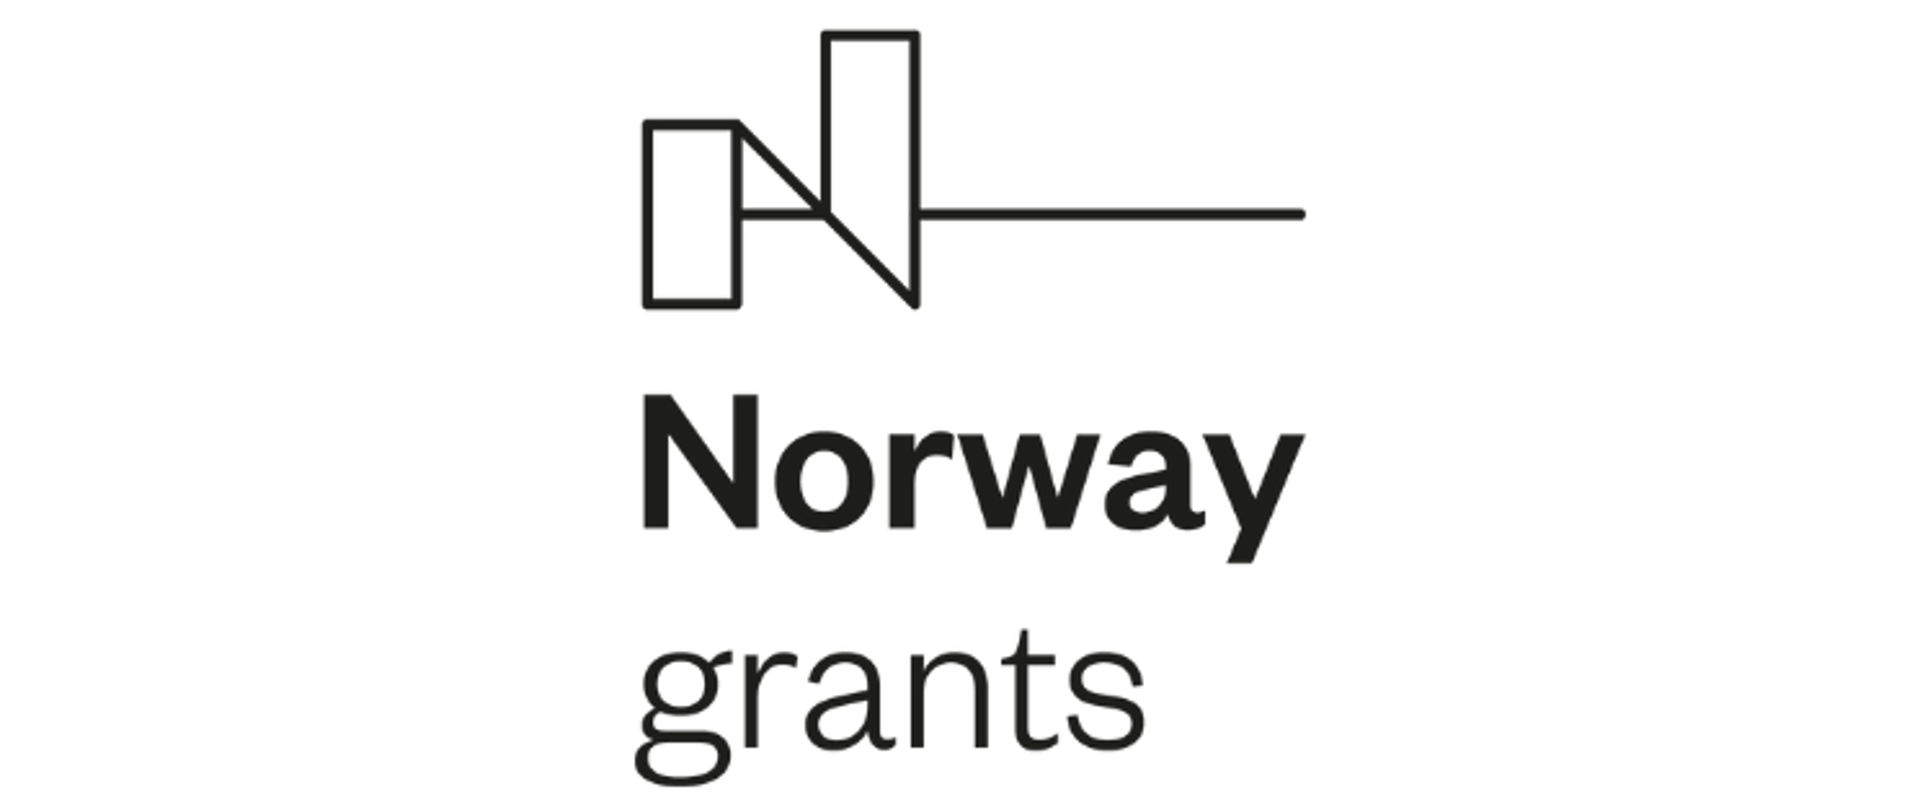 Białe tło. Czarne logo Funduszy Norweskich.